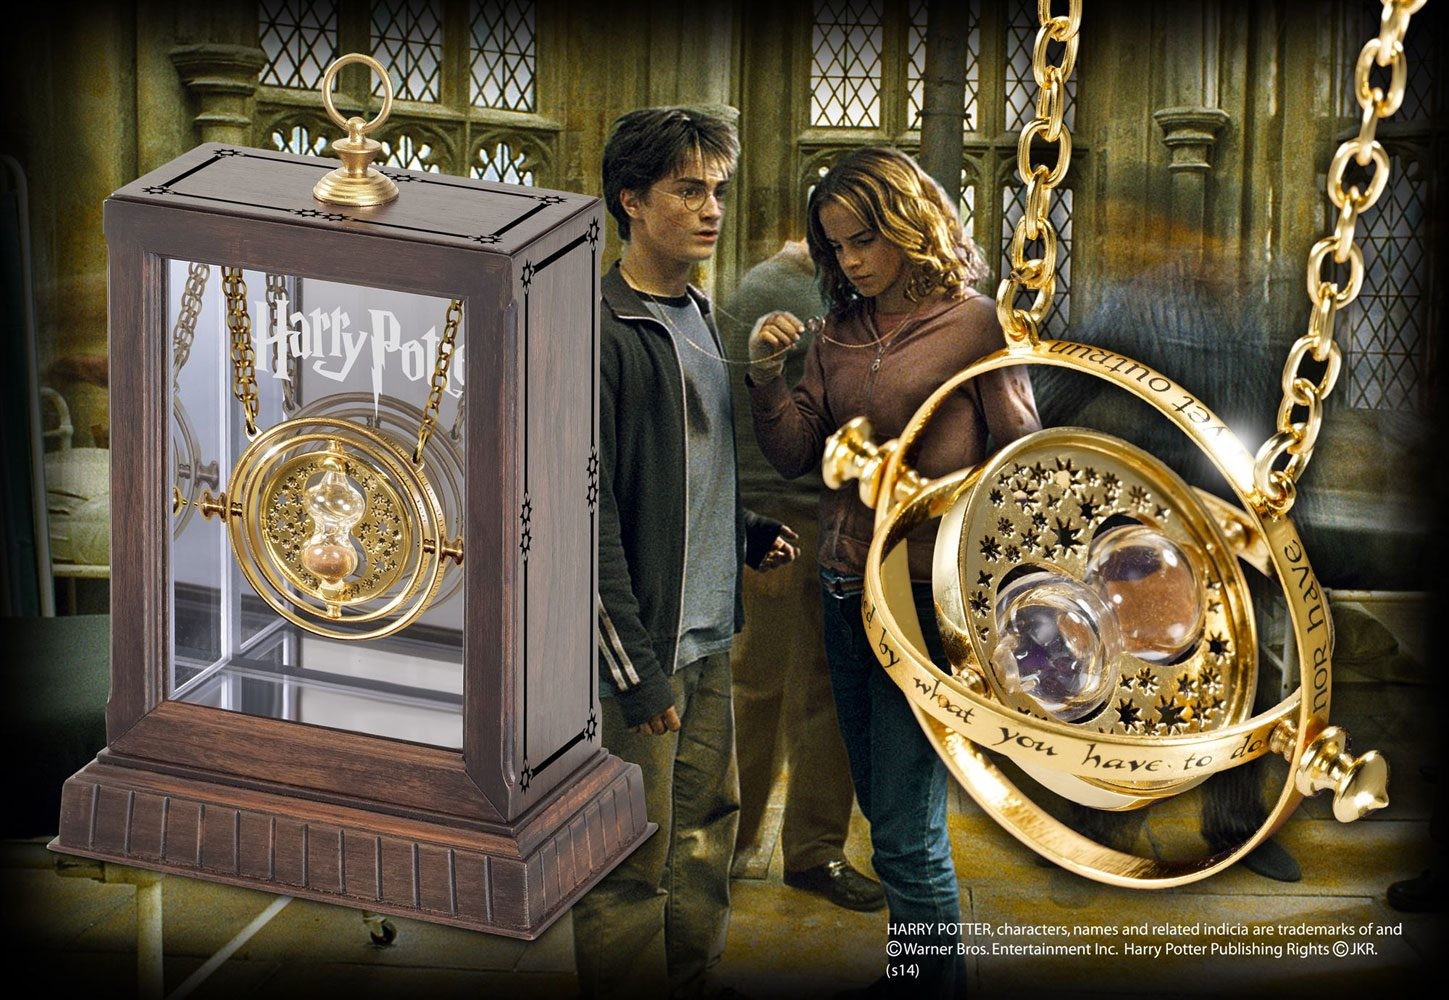 Porte-clés Retourneur de Temps - Noble Collection - Harry Potter